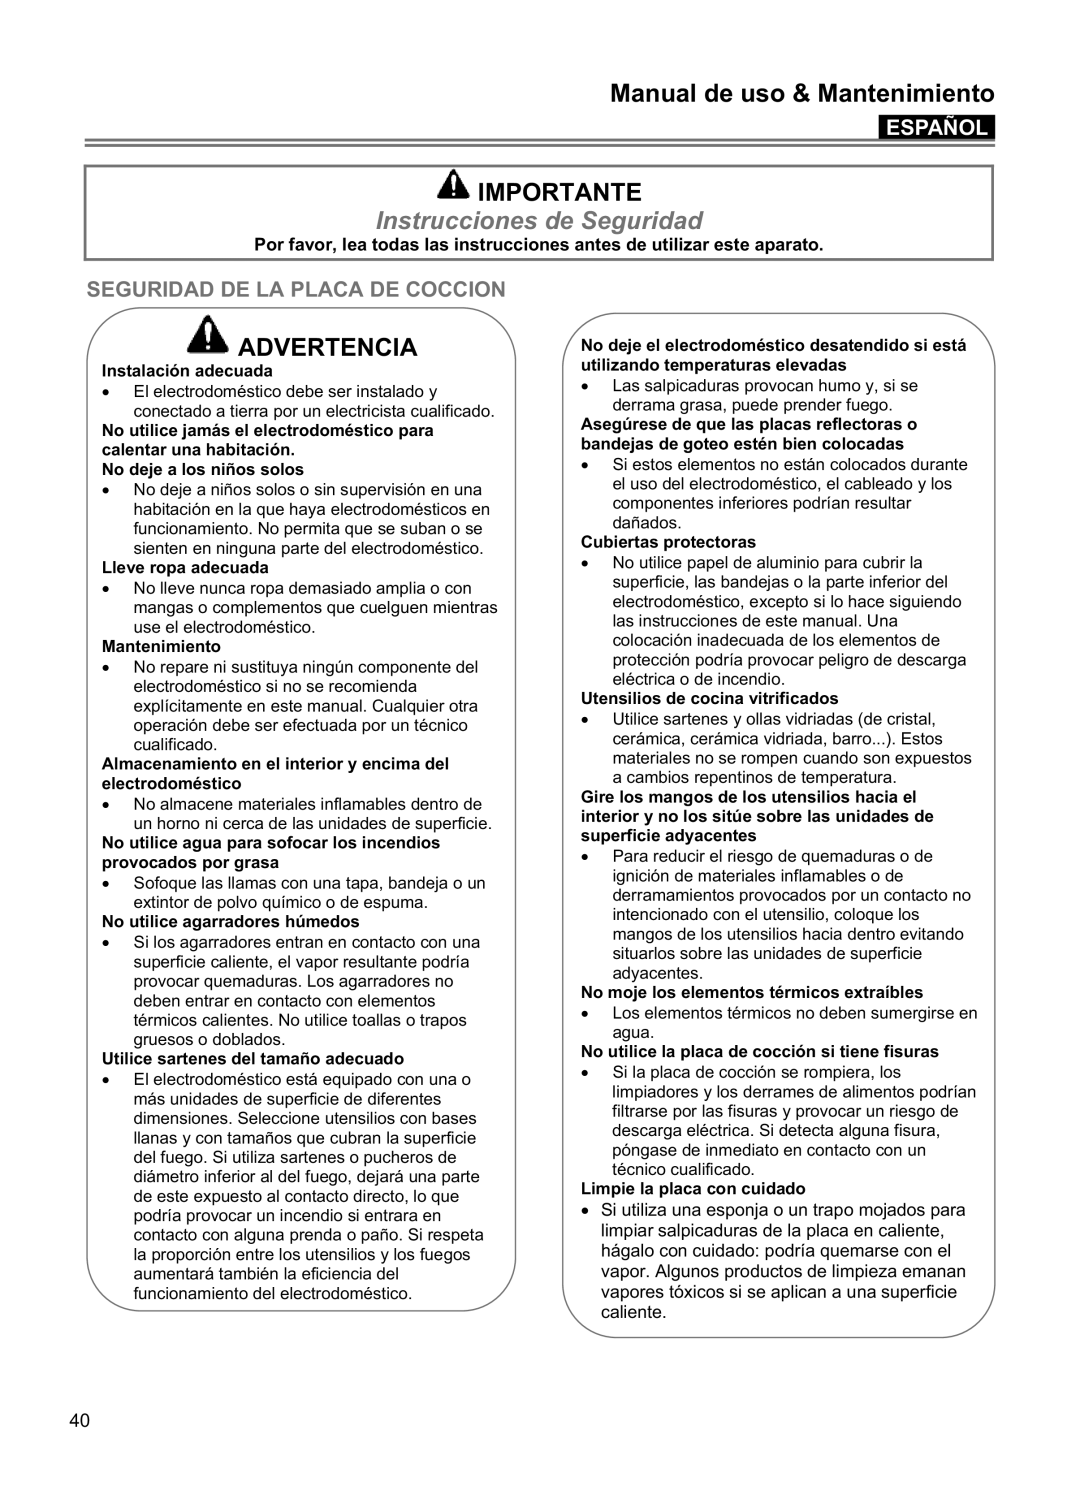 Blomberg CTE 36500 Importante, Instrucciones de Seguridad, Seguridad De La Placa De Coccion, Manual de uso & Mantenimiento 